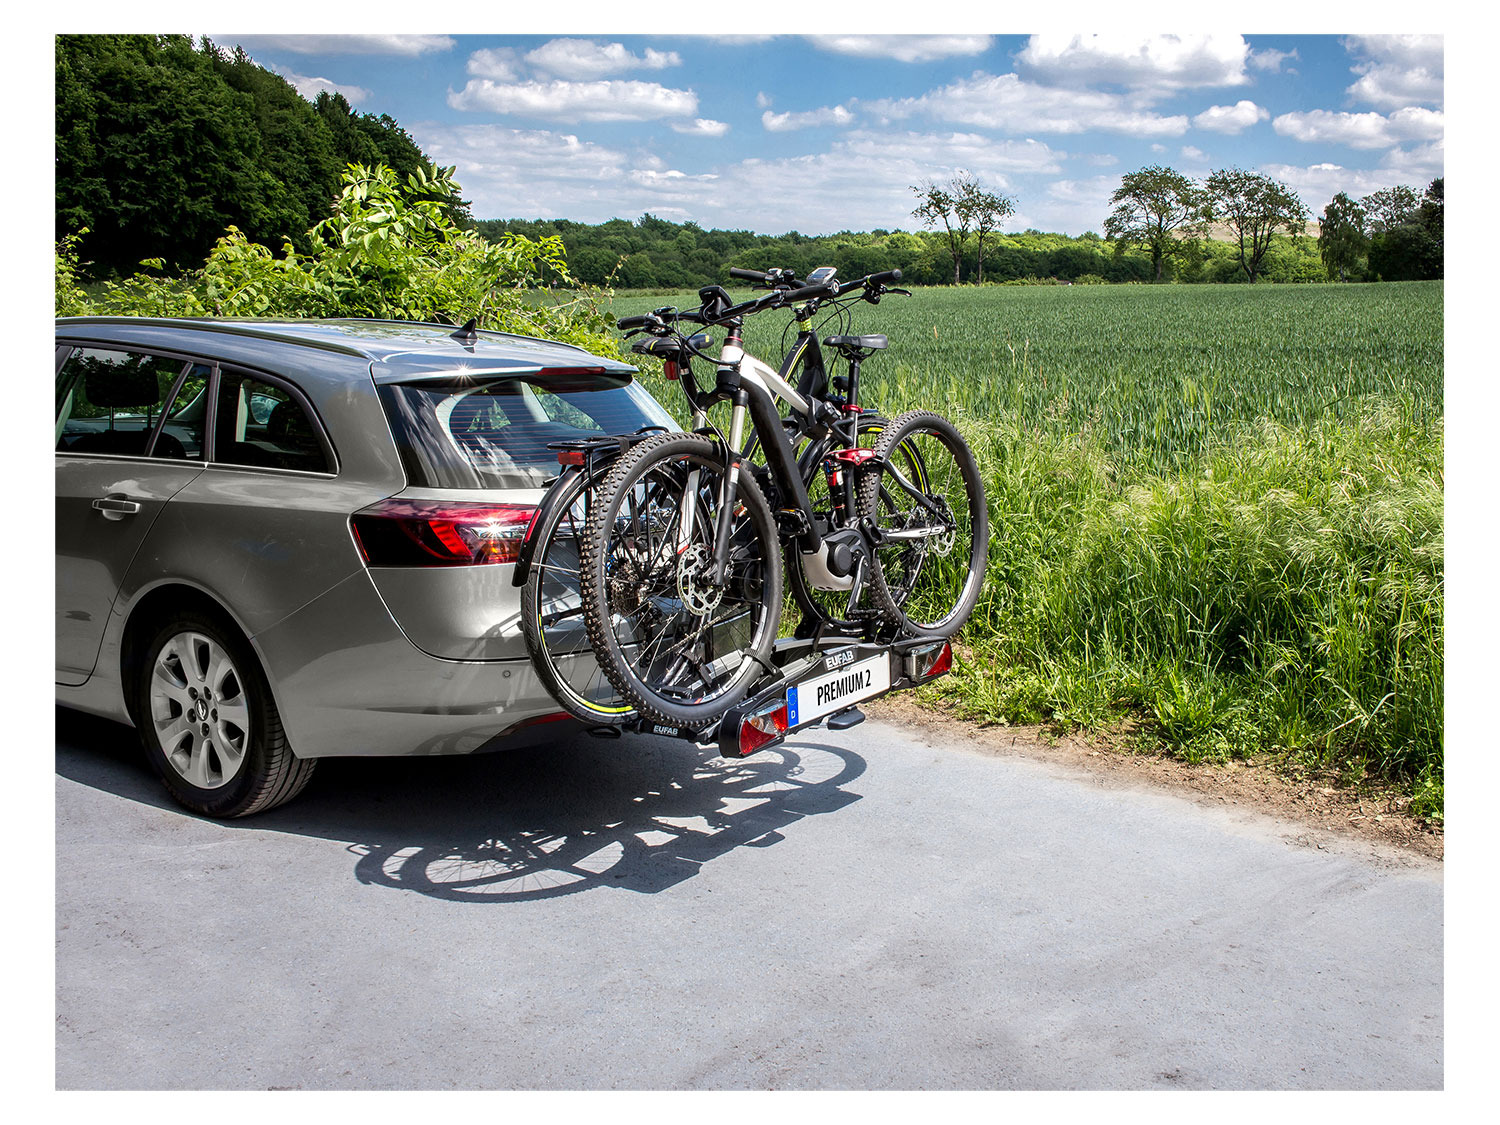 Fahrradträger Plattform für 3 Fahrräder Befestigung rapide auf der  Anhängerkupplung - kompatibel, um 2 Fahrräder zu stellen P2R Eufab Amber 60  kgs - Fahrradträger - Transport - Ausrüstung